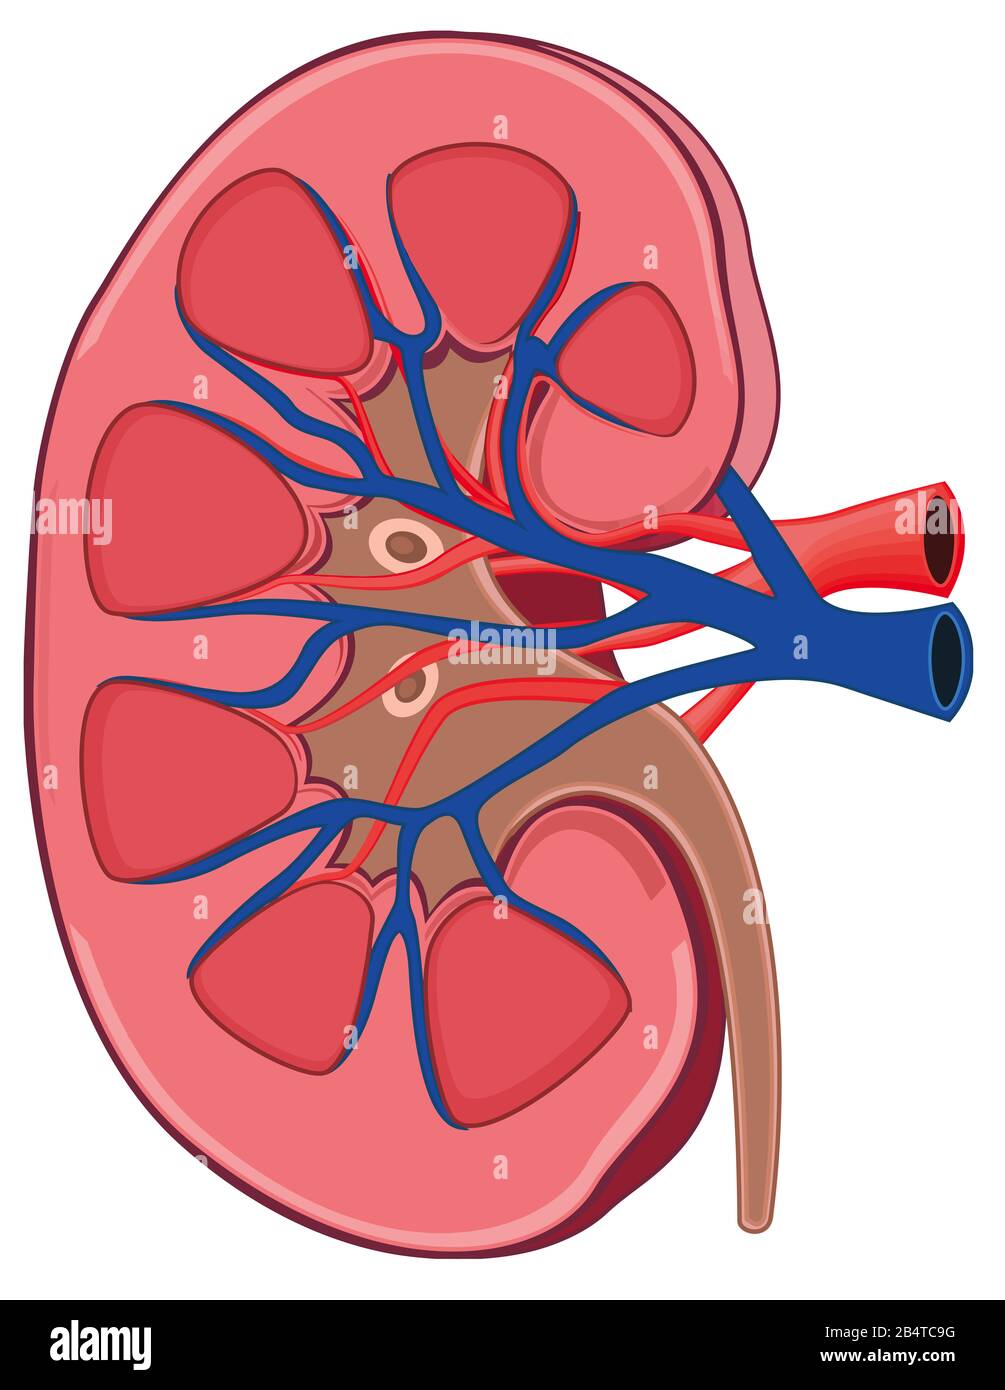 biologie rénale anatomie des organes rénaux illustration Banque D'Images